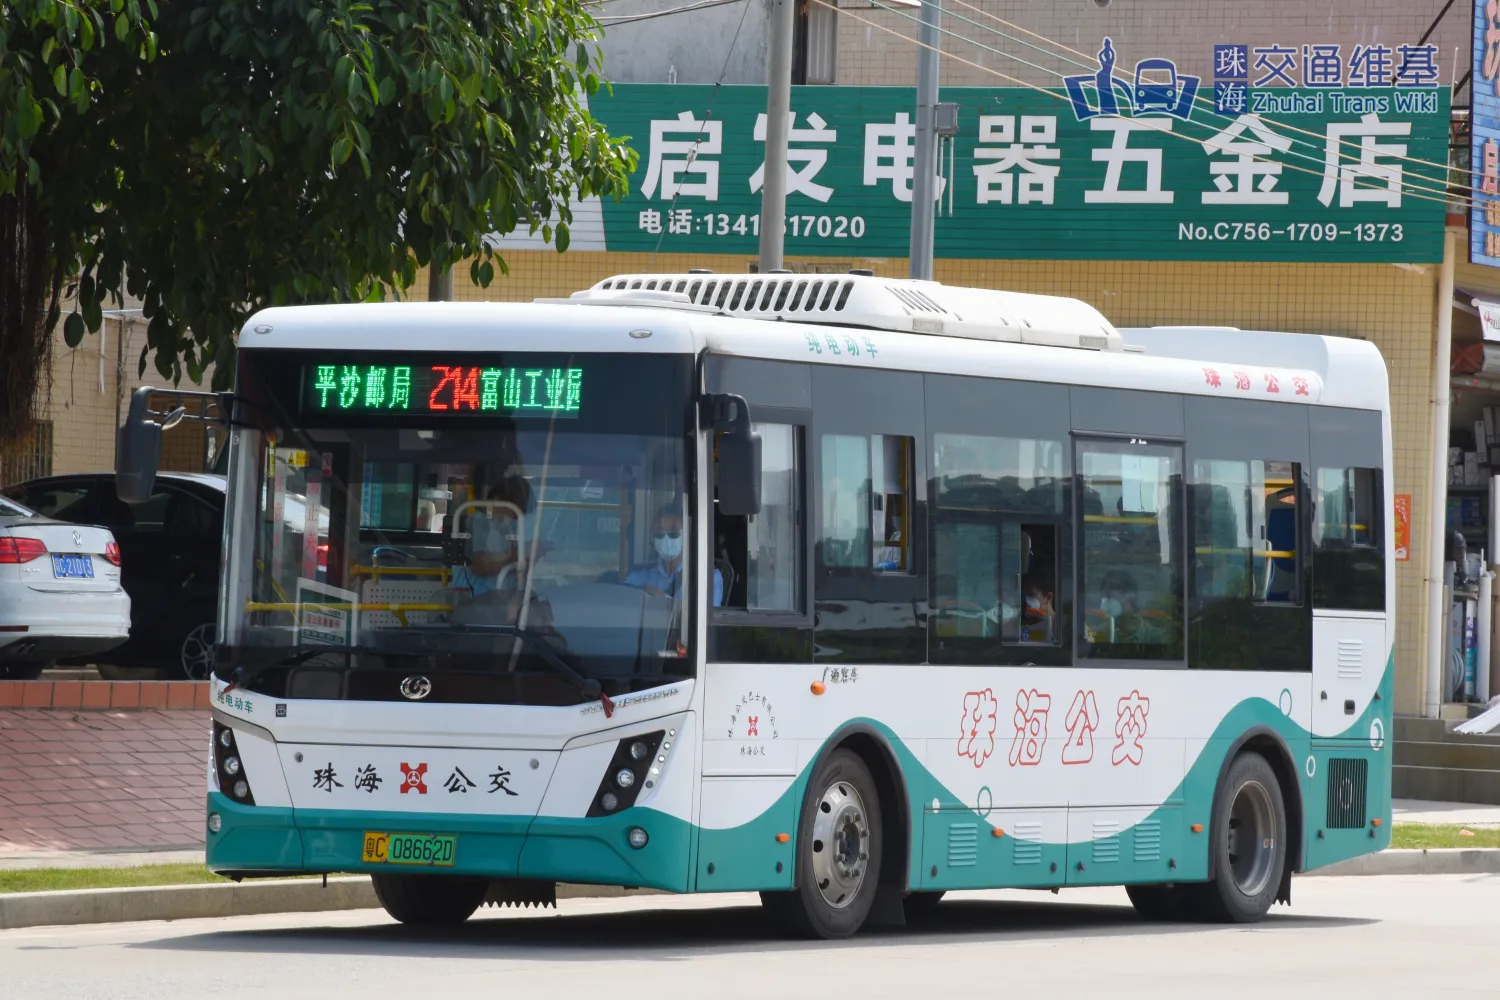 珠海公交K10快线 - 珠海交通维基